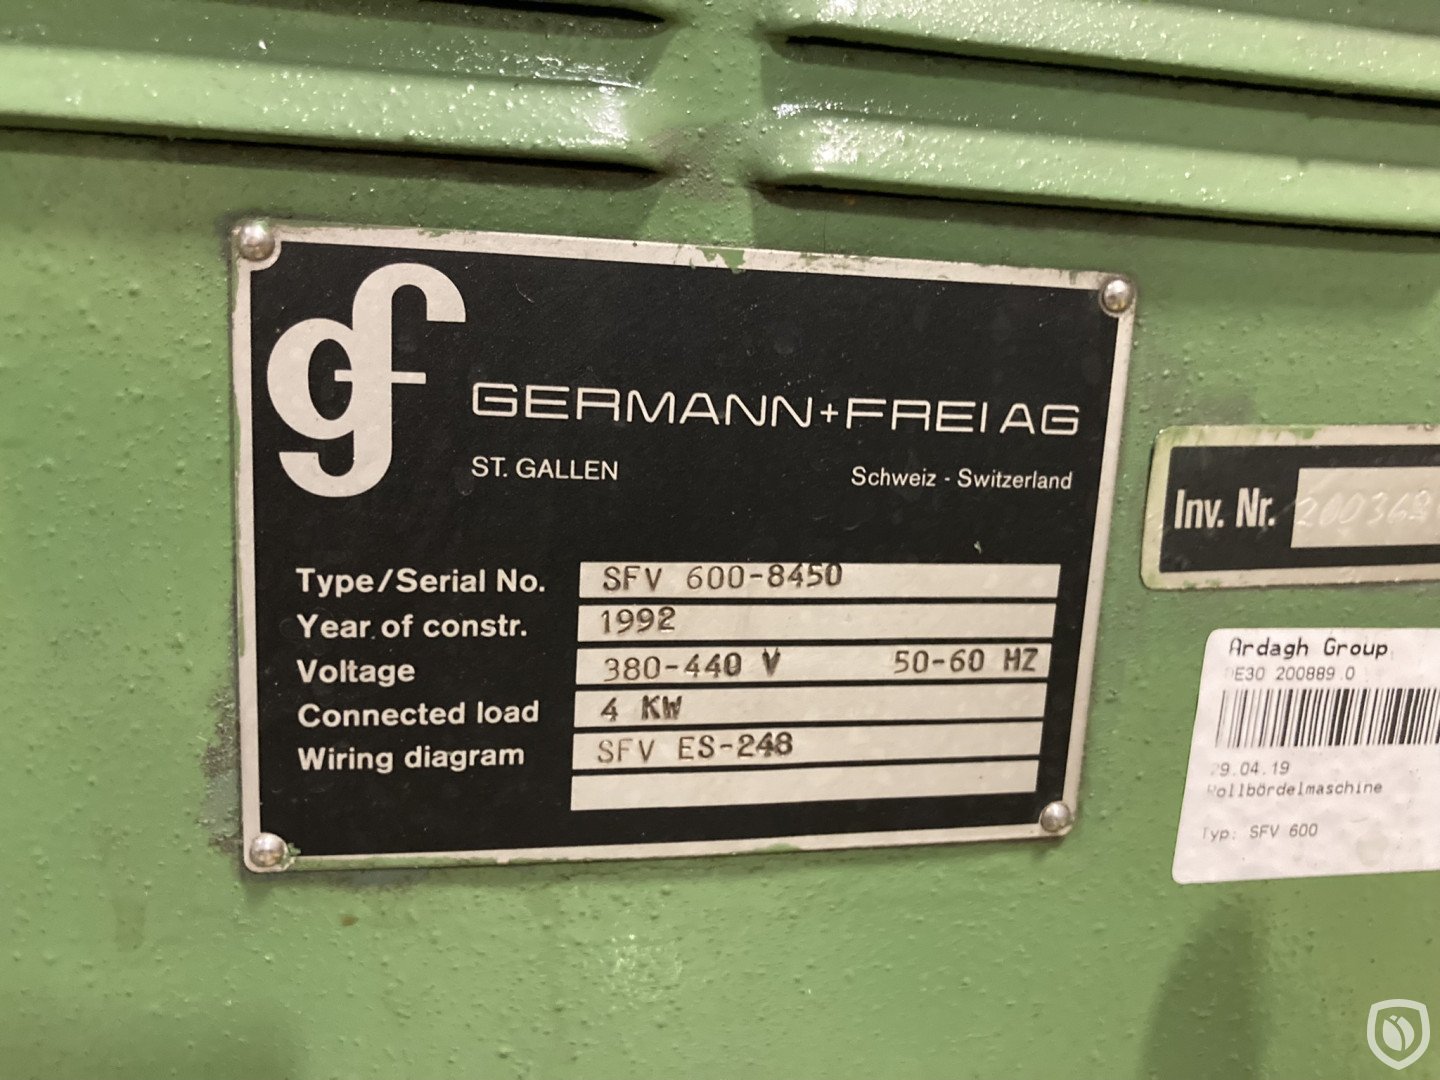 Germann & Frei SFV 600